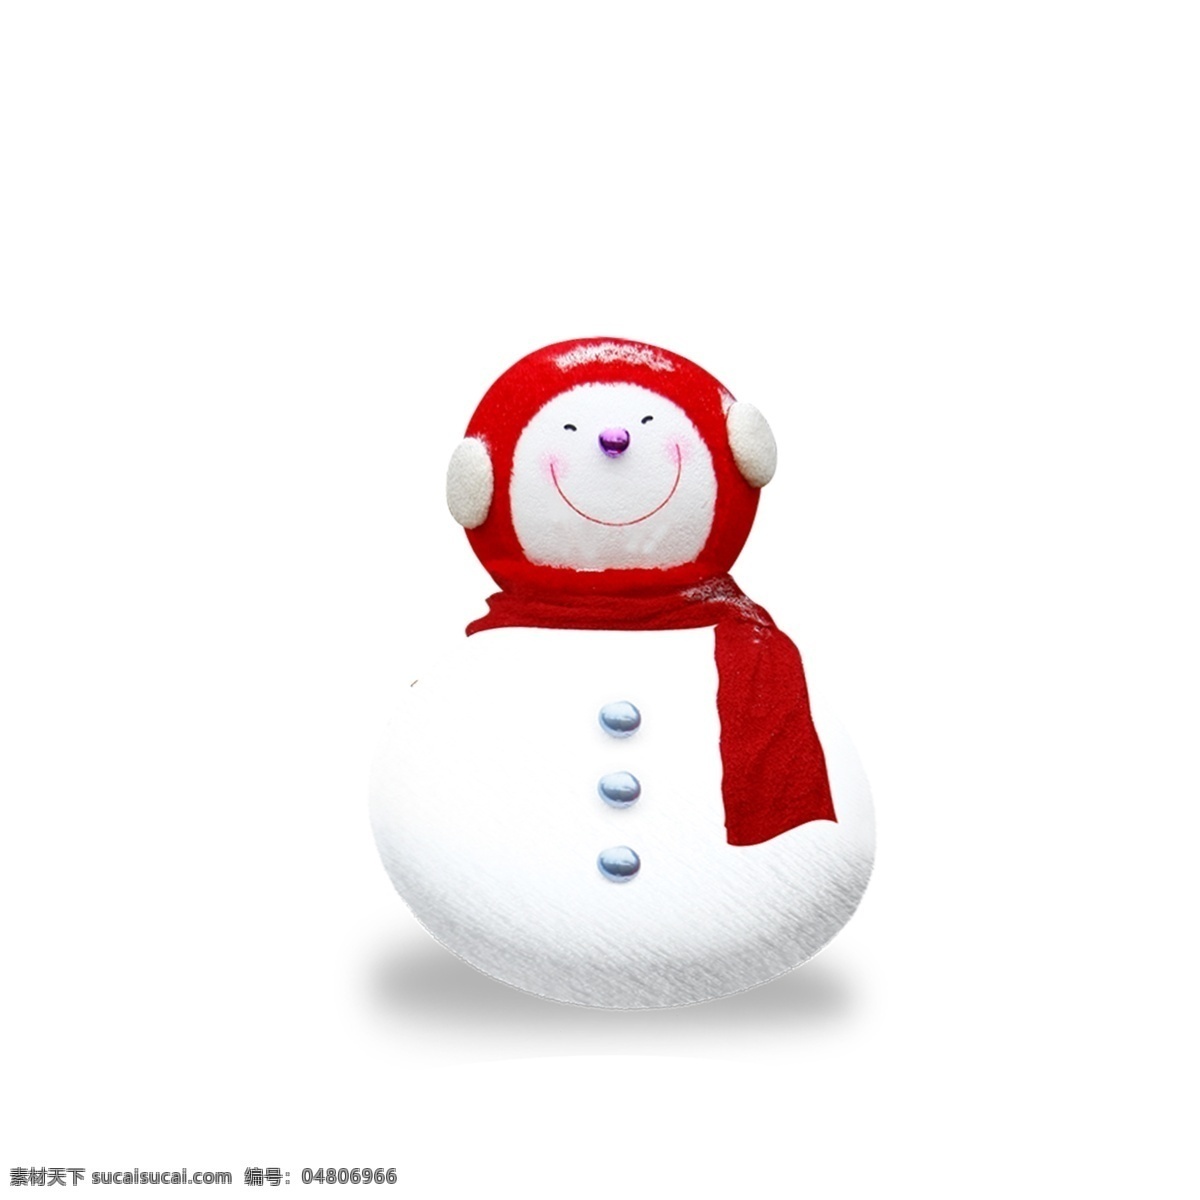 带 耳罩 冬季 雪人 商用 元素 简约 简洁 插画 卡通 手绘